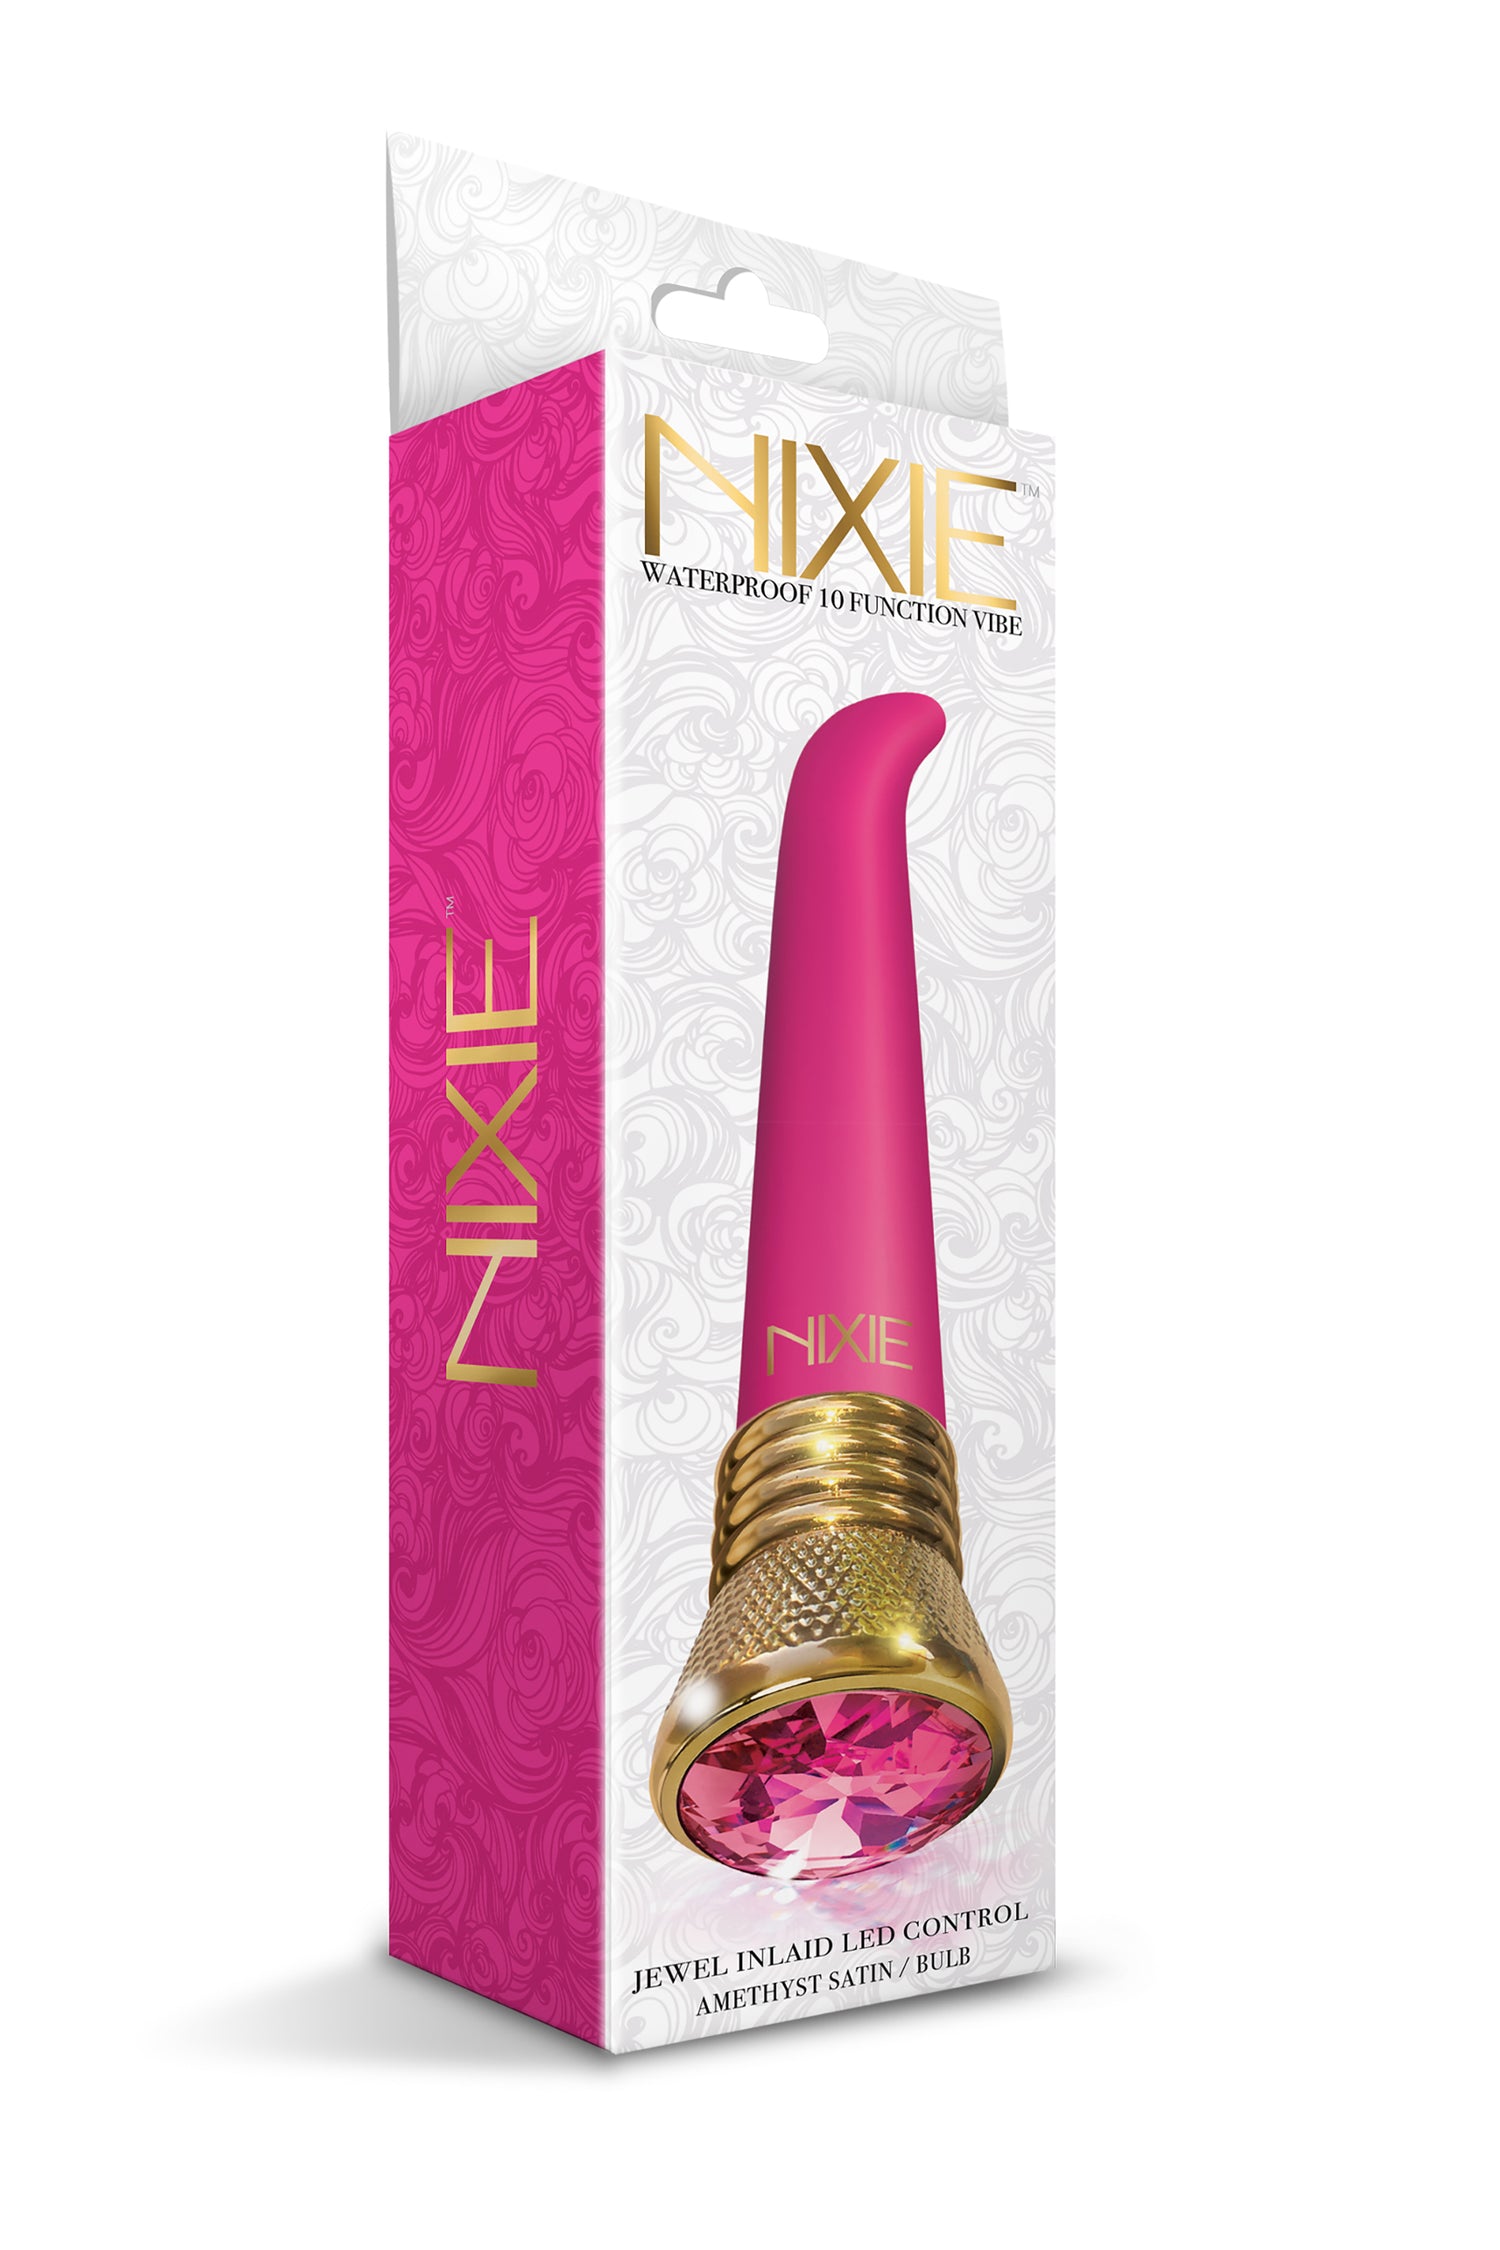 Nixie Jewel Satin G-Spot Vibe Pink Tourmaline